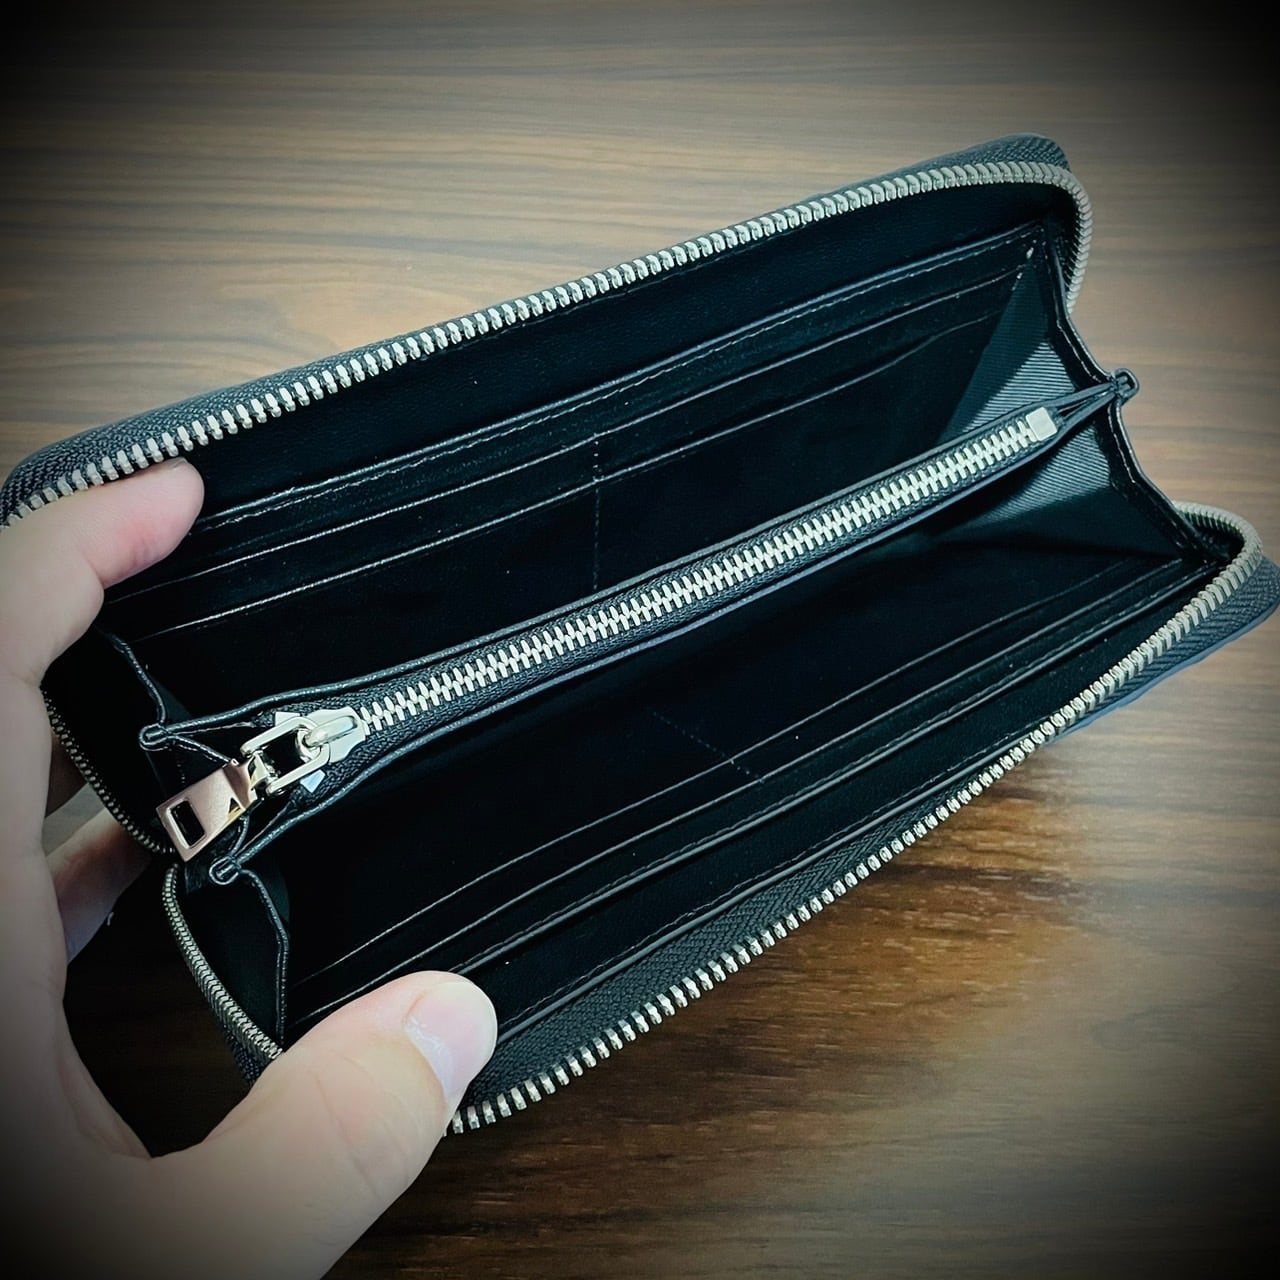 鰐本物⭐クロコダイル本革⭐ラウンドファスナー長財布⭐人気のブラック